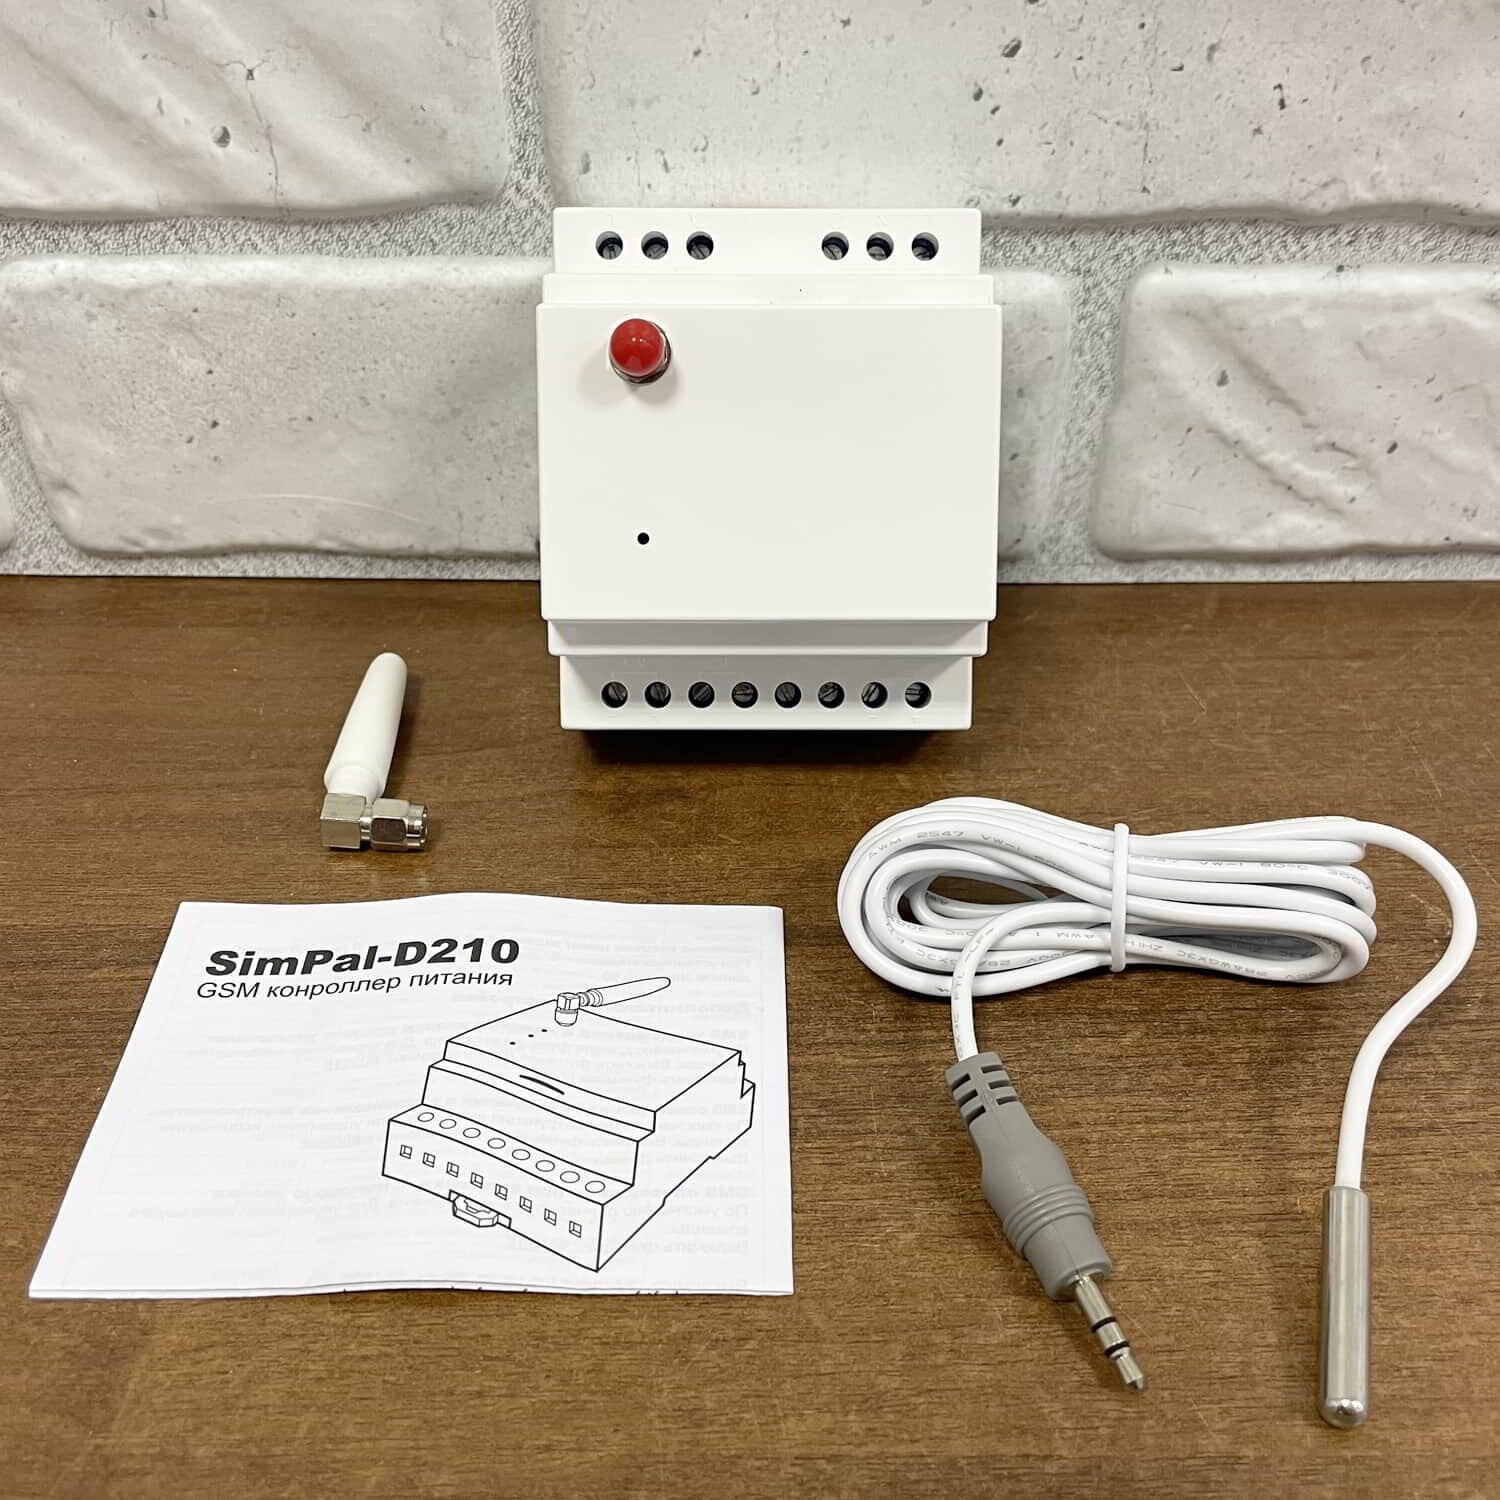 GSM реле SimPal-D210 v. H24 на DIN рейку и датчик температуры (управление электропитанием по смс звонку и расписанию нагрузка до 3500 Вт)